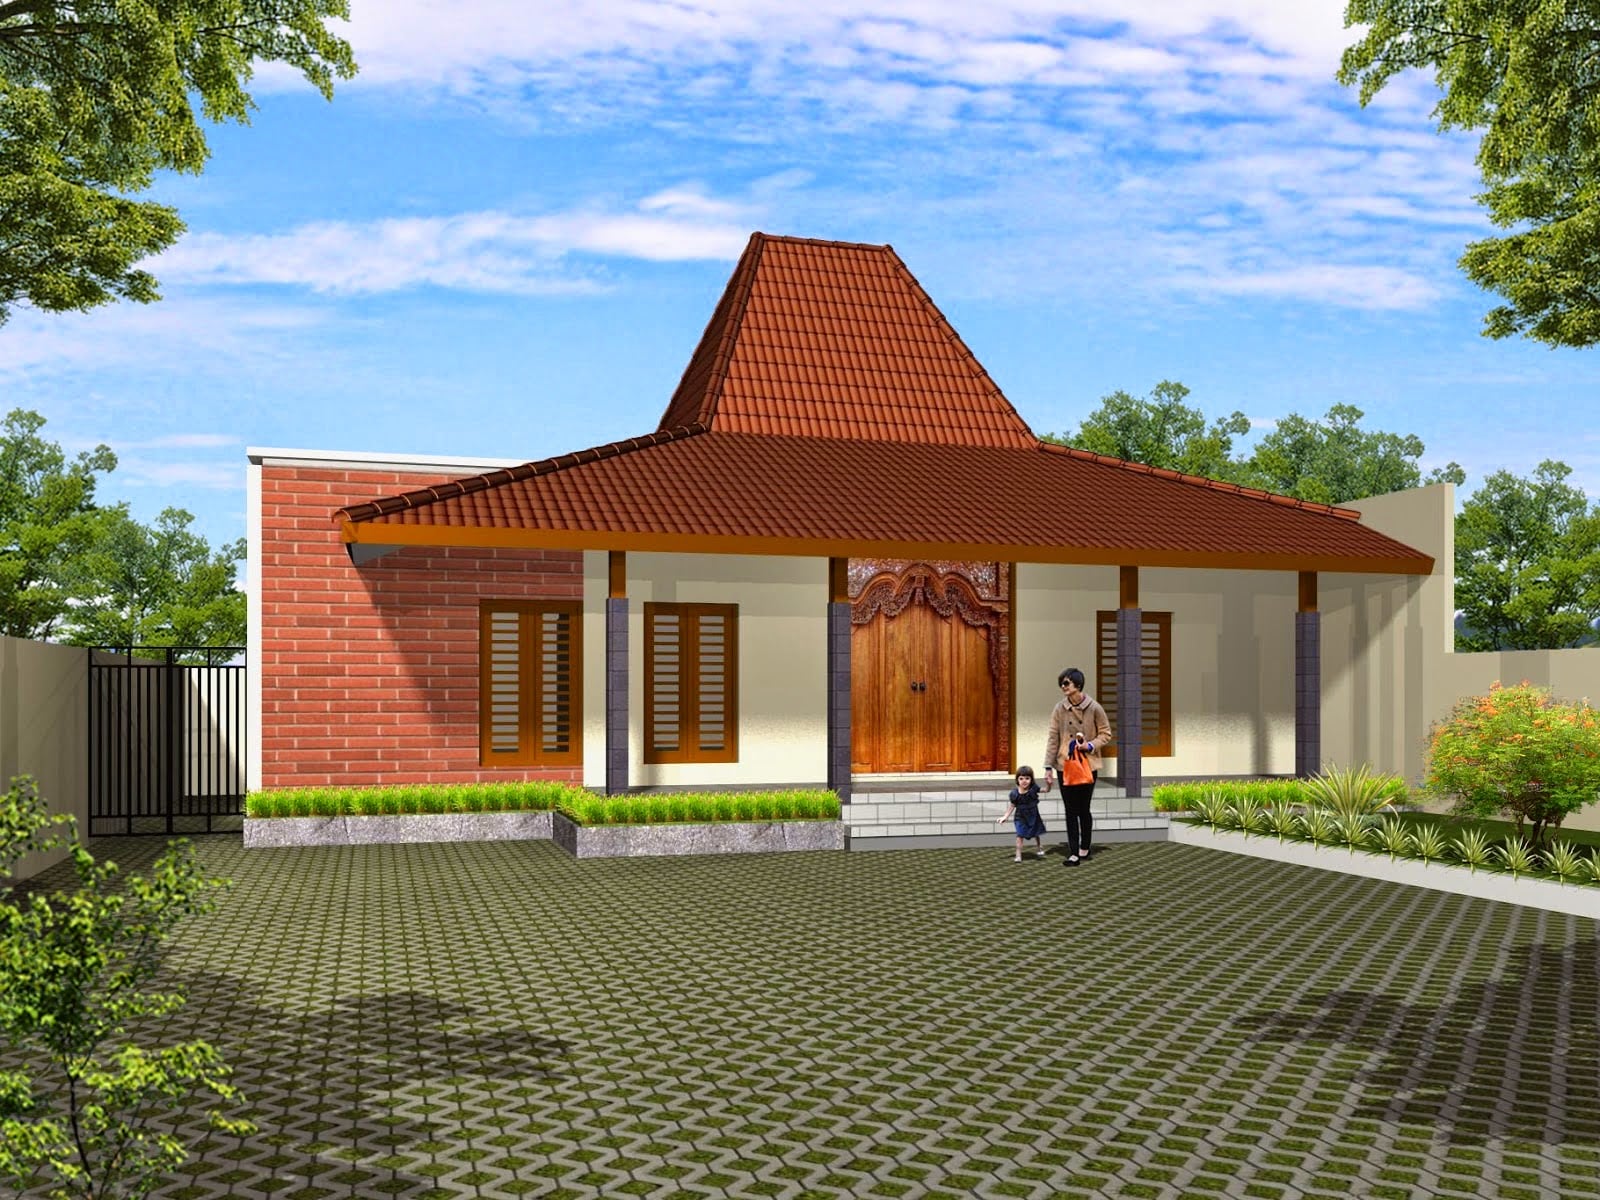 Mudah Desain Rumah Adat Jawa Tengah Modern 49 Untuk Ide Desain Interior Untuk Desain Rumah oleh Desain Rumah Adat Jawa Tengah Modern